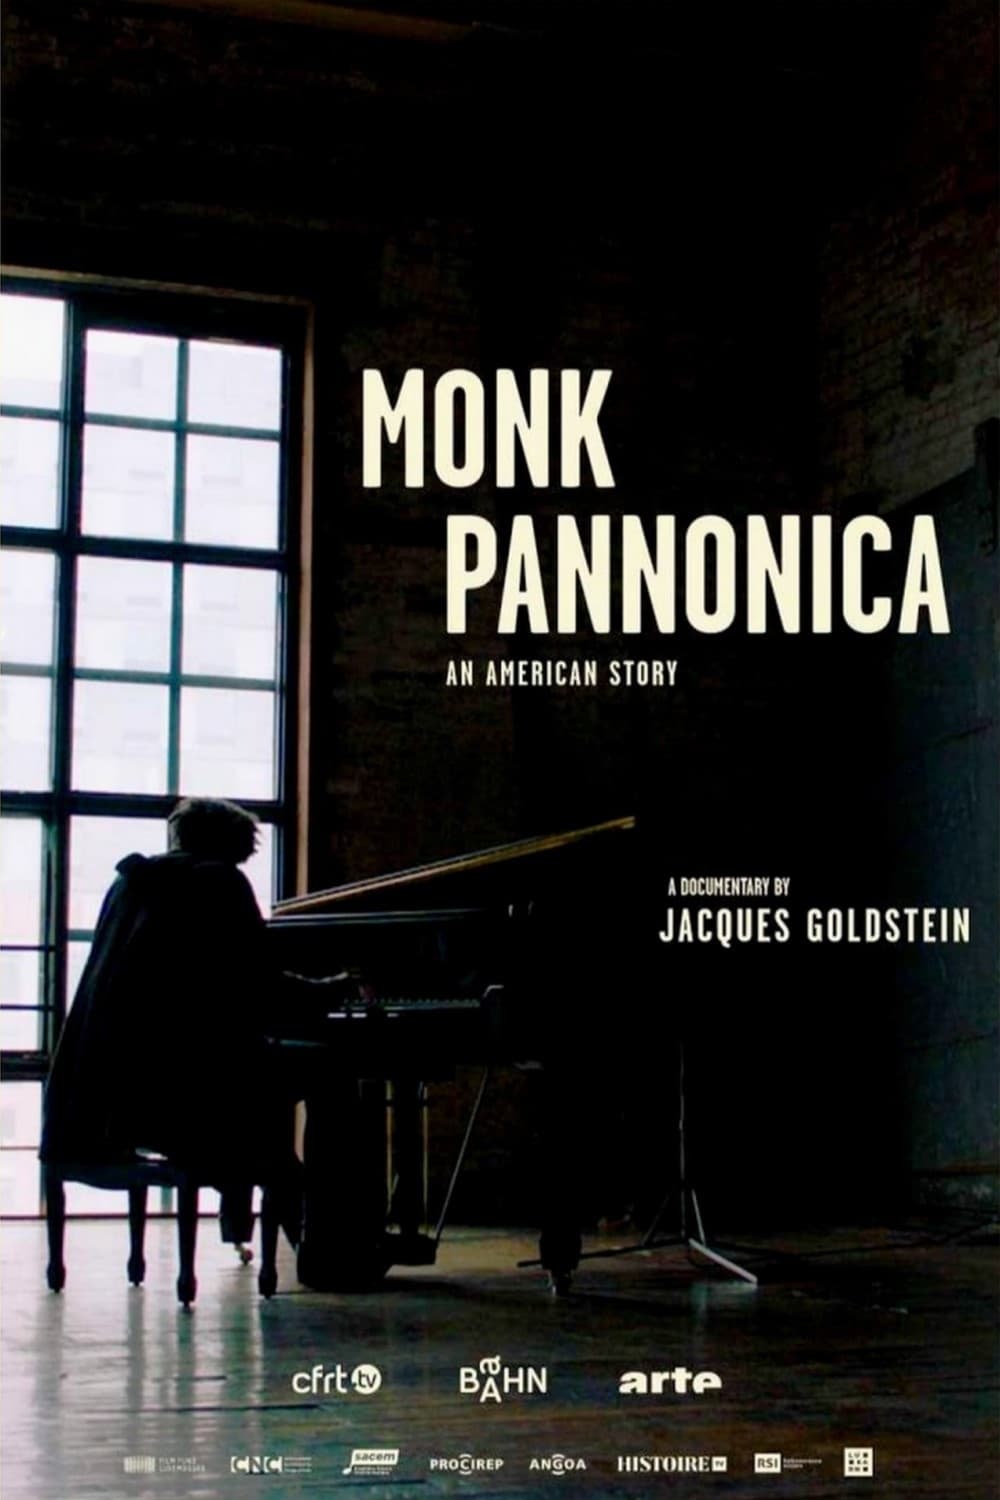 Monk, Pannonica et les jazzmen